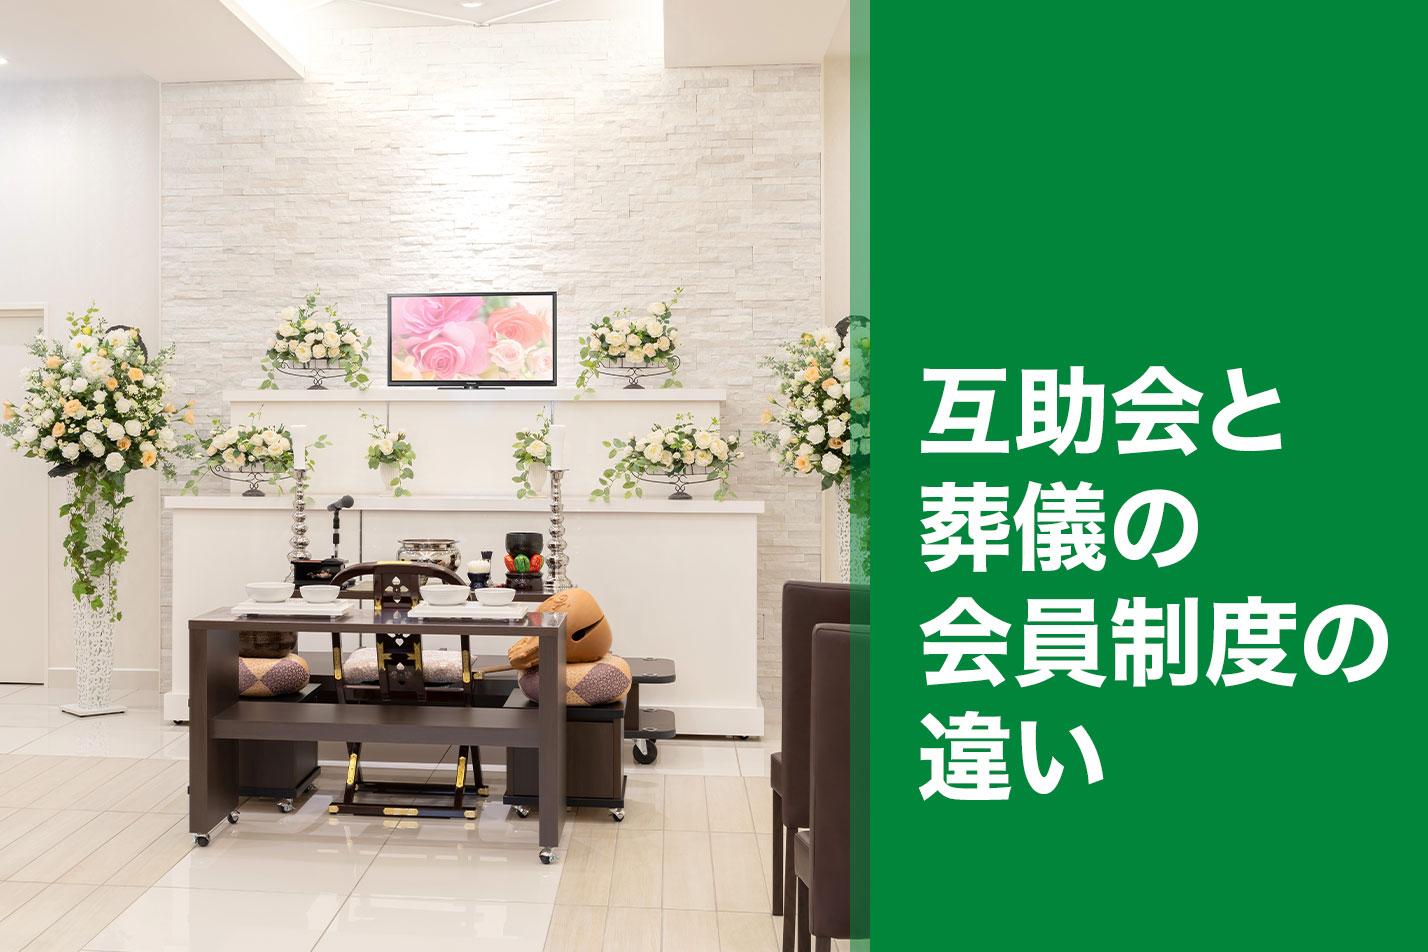  【小金井市】互助会と葬儀の会員制度の違いのイメージ画像